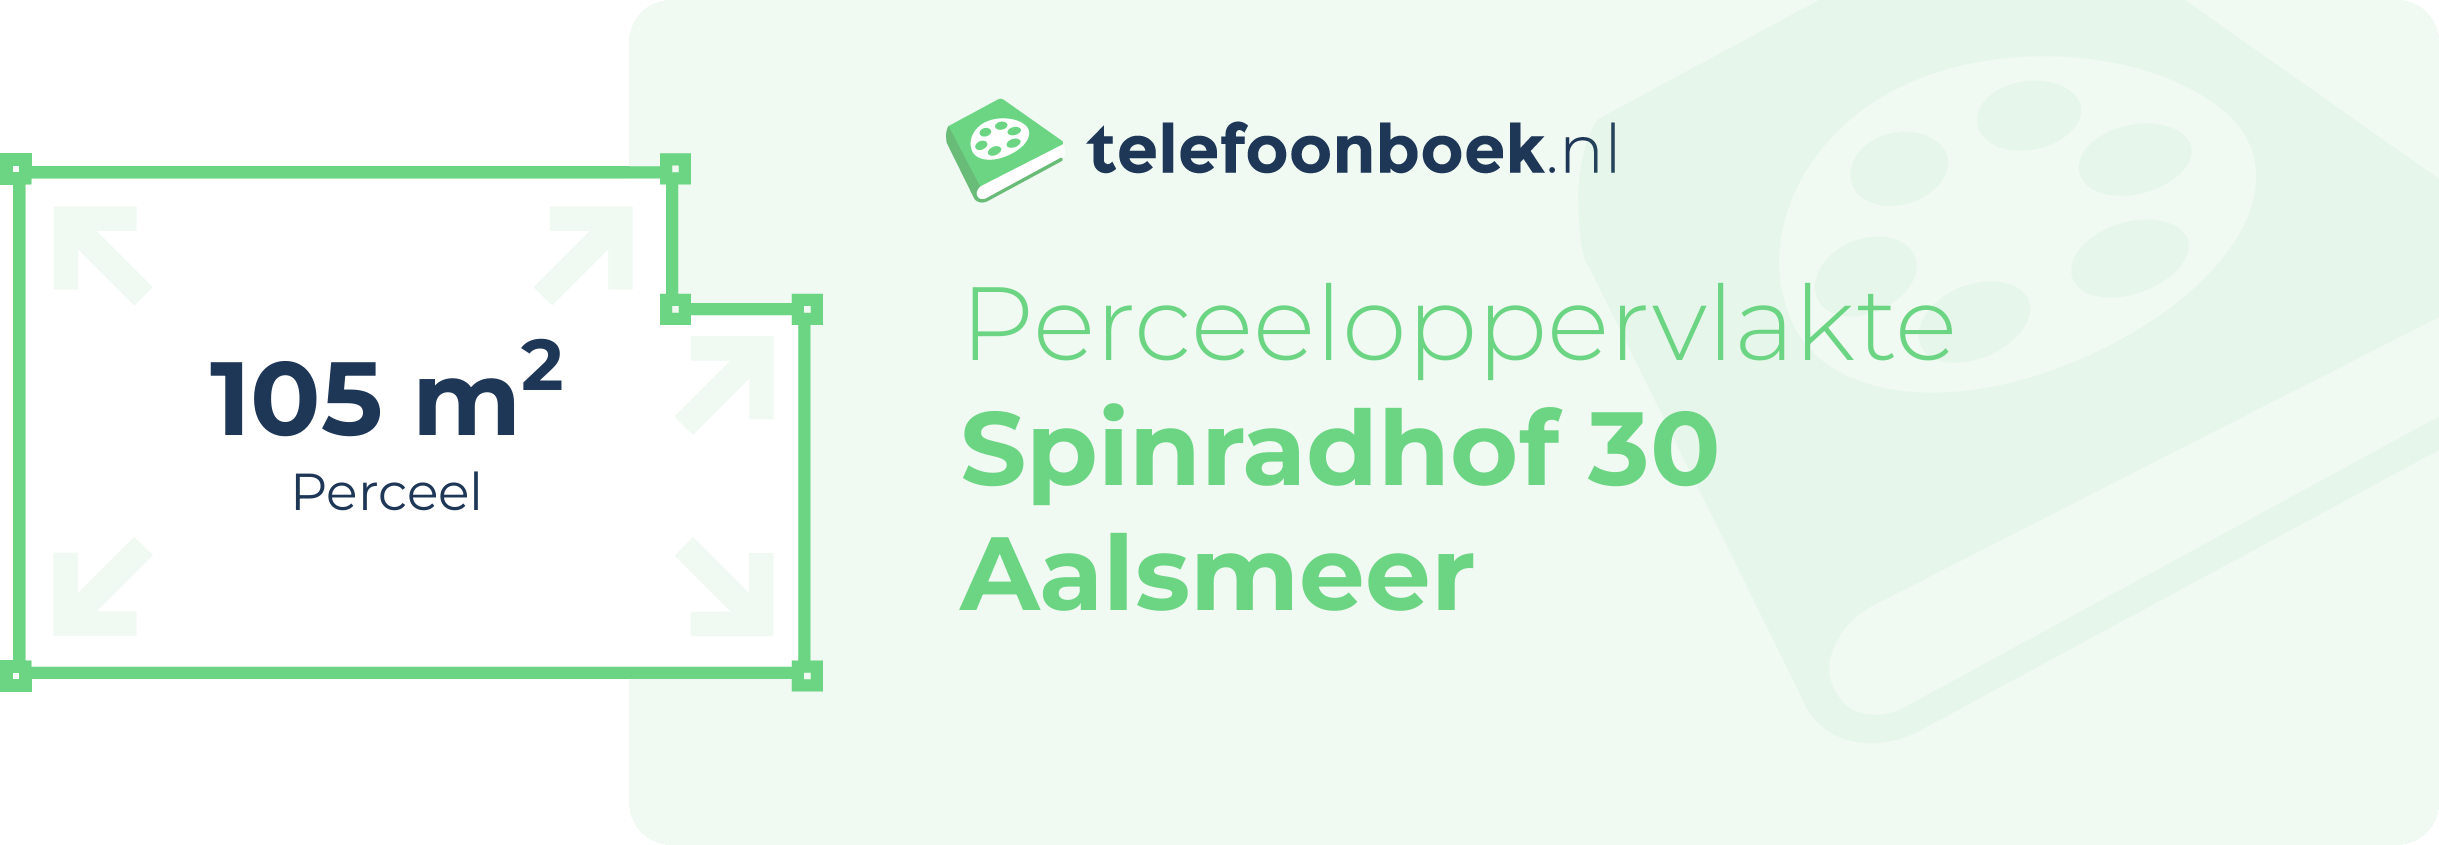 Perceeloppervlakte Spinradhof 30 Aalsmeer